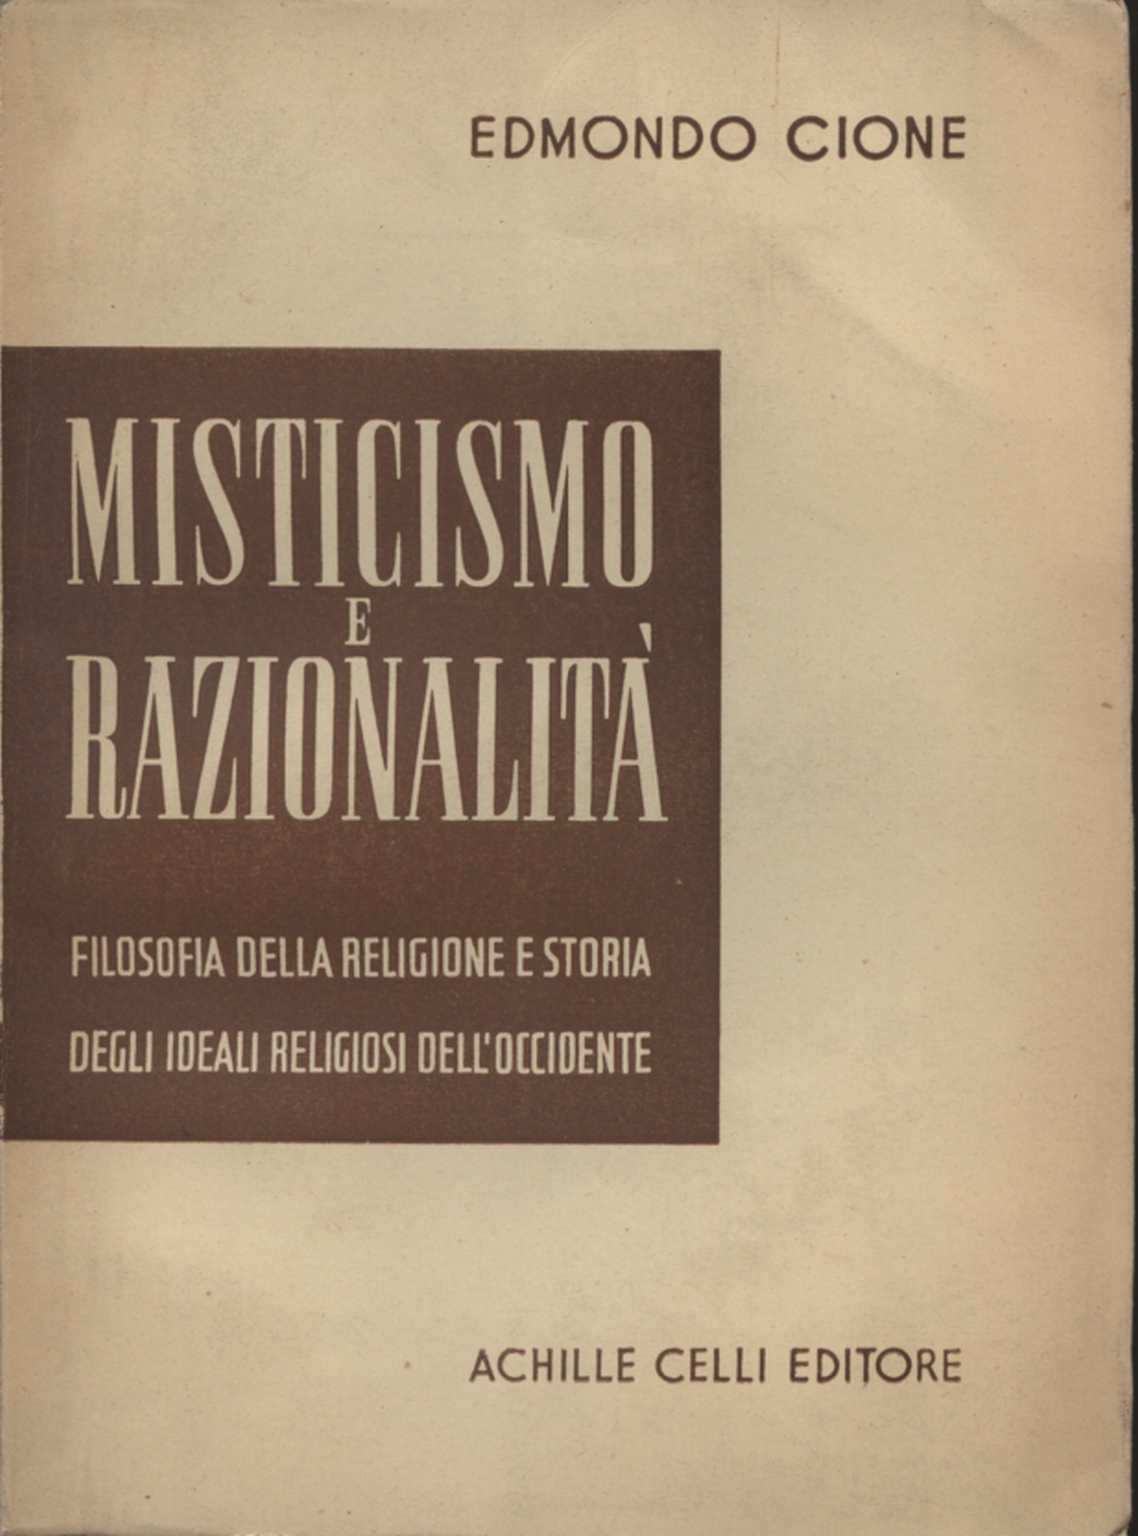 Misticismo e razionalità, Edmondo Cione